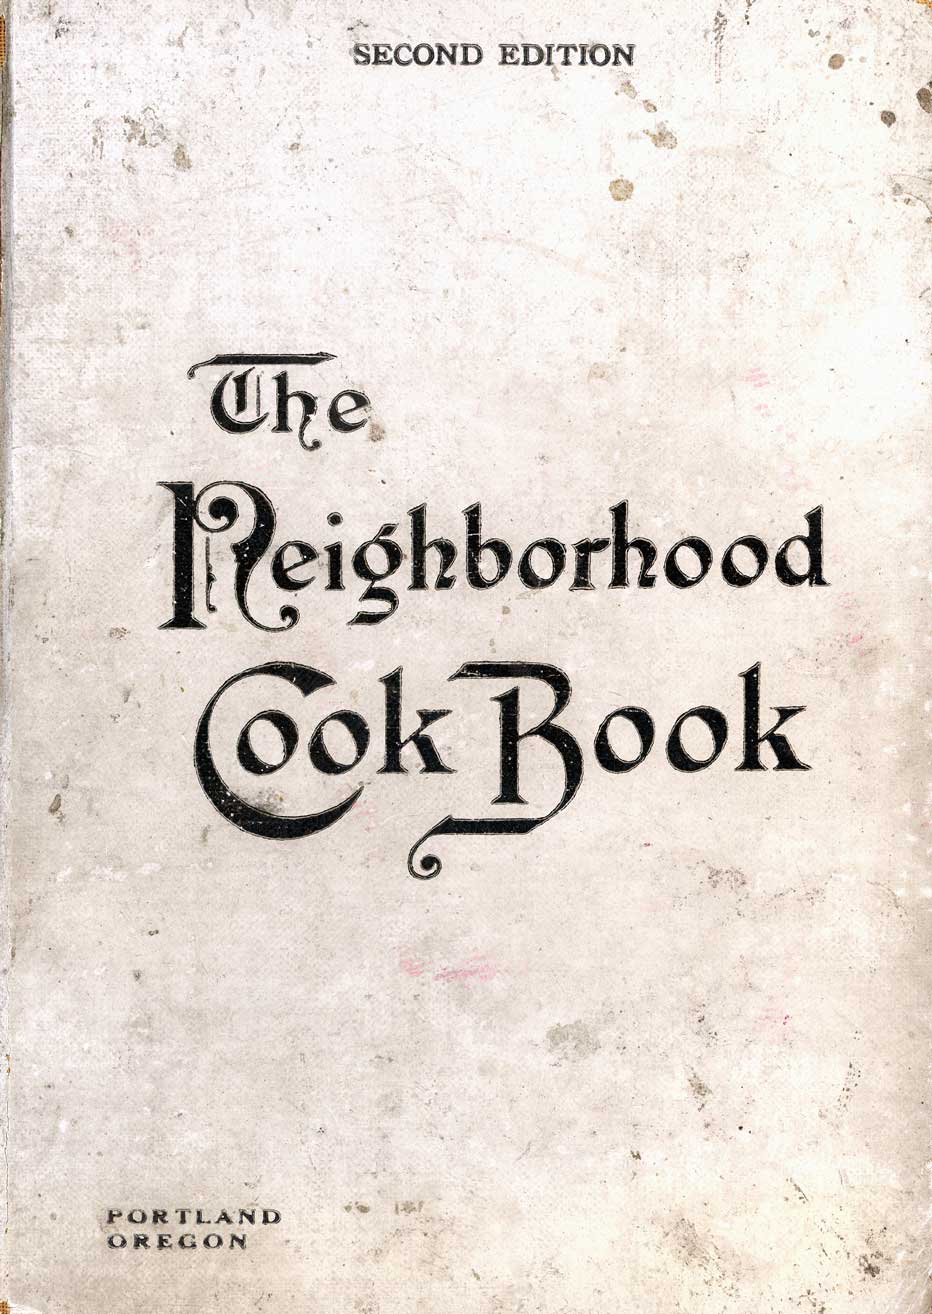 The neighborhood cook book